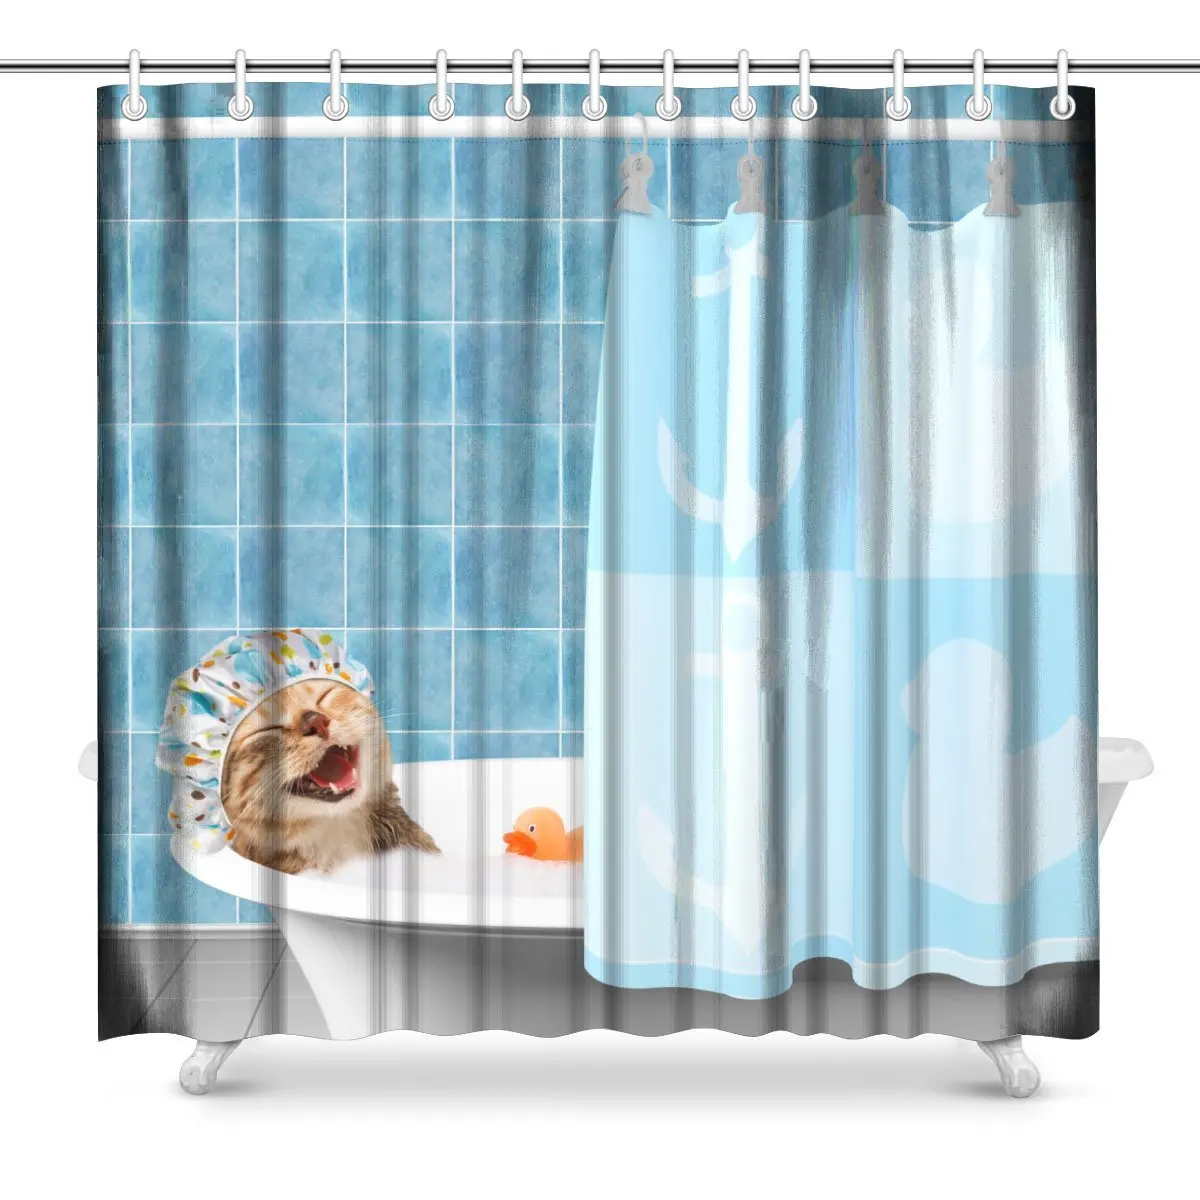 Забавный кот принимает ванну с игрушкой утка полиэстер ткань Ванная комната Душ Шторы набор, 72 дюйма длинной современный